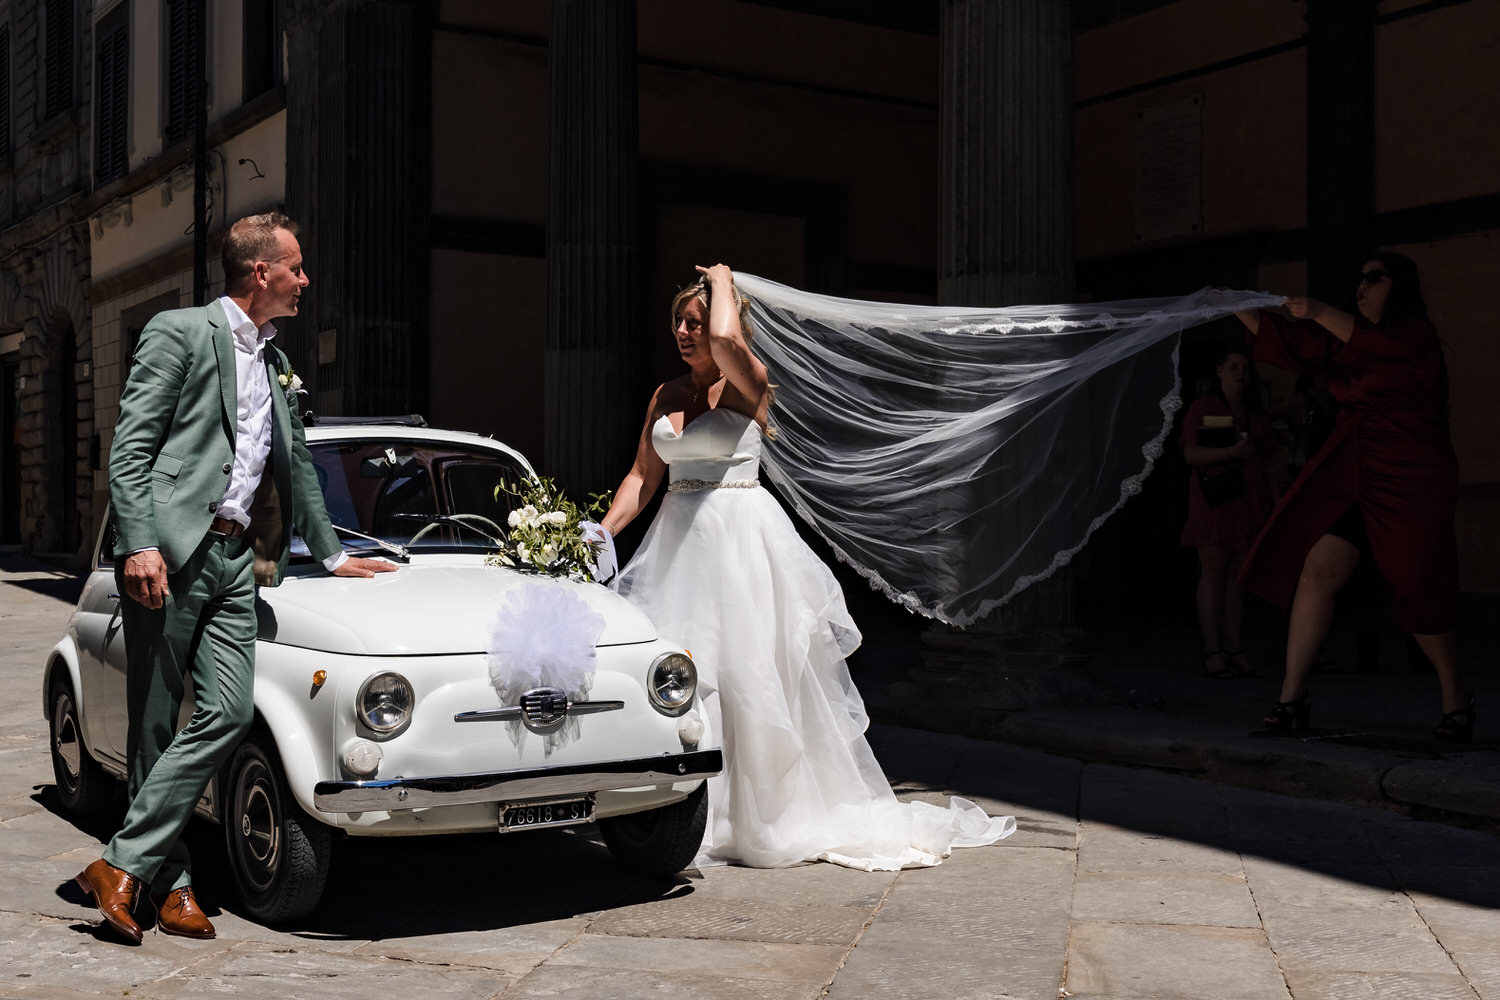 aankomst van bruidspaar bij gemeentehuis tijdens bruiloft in toscane